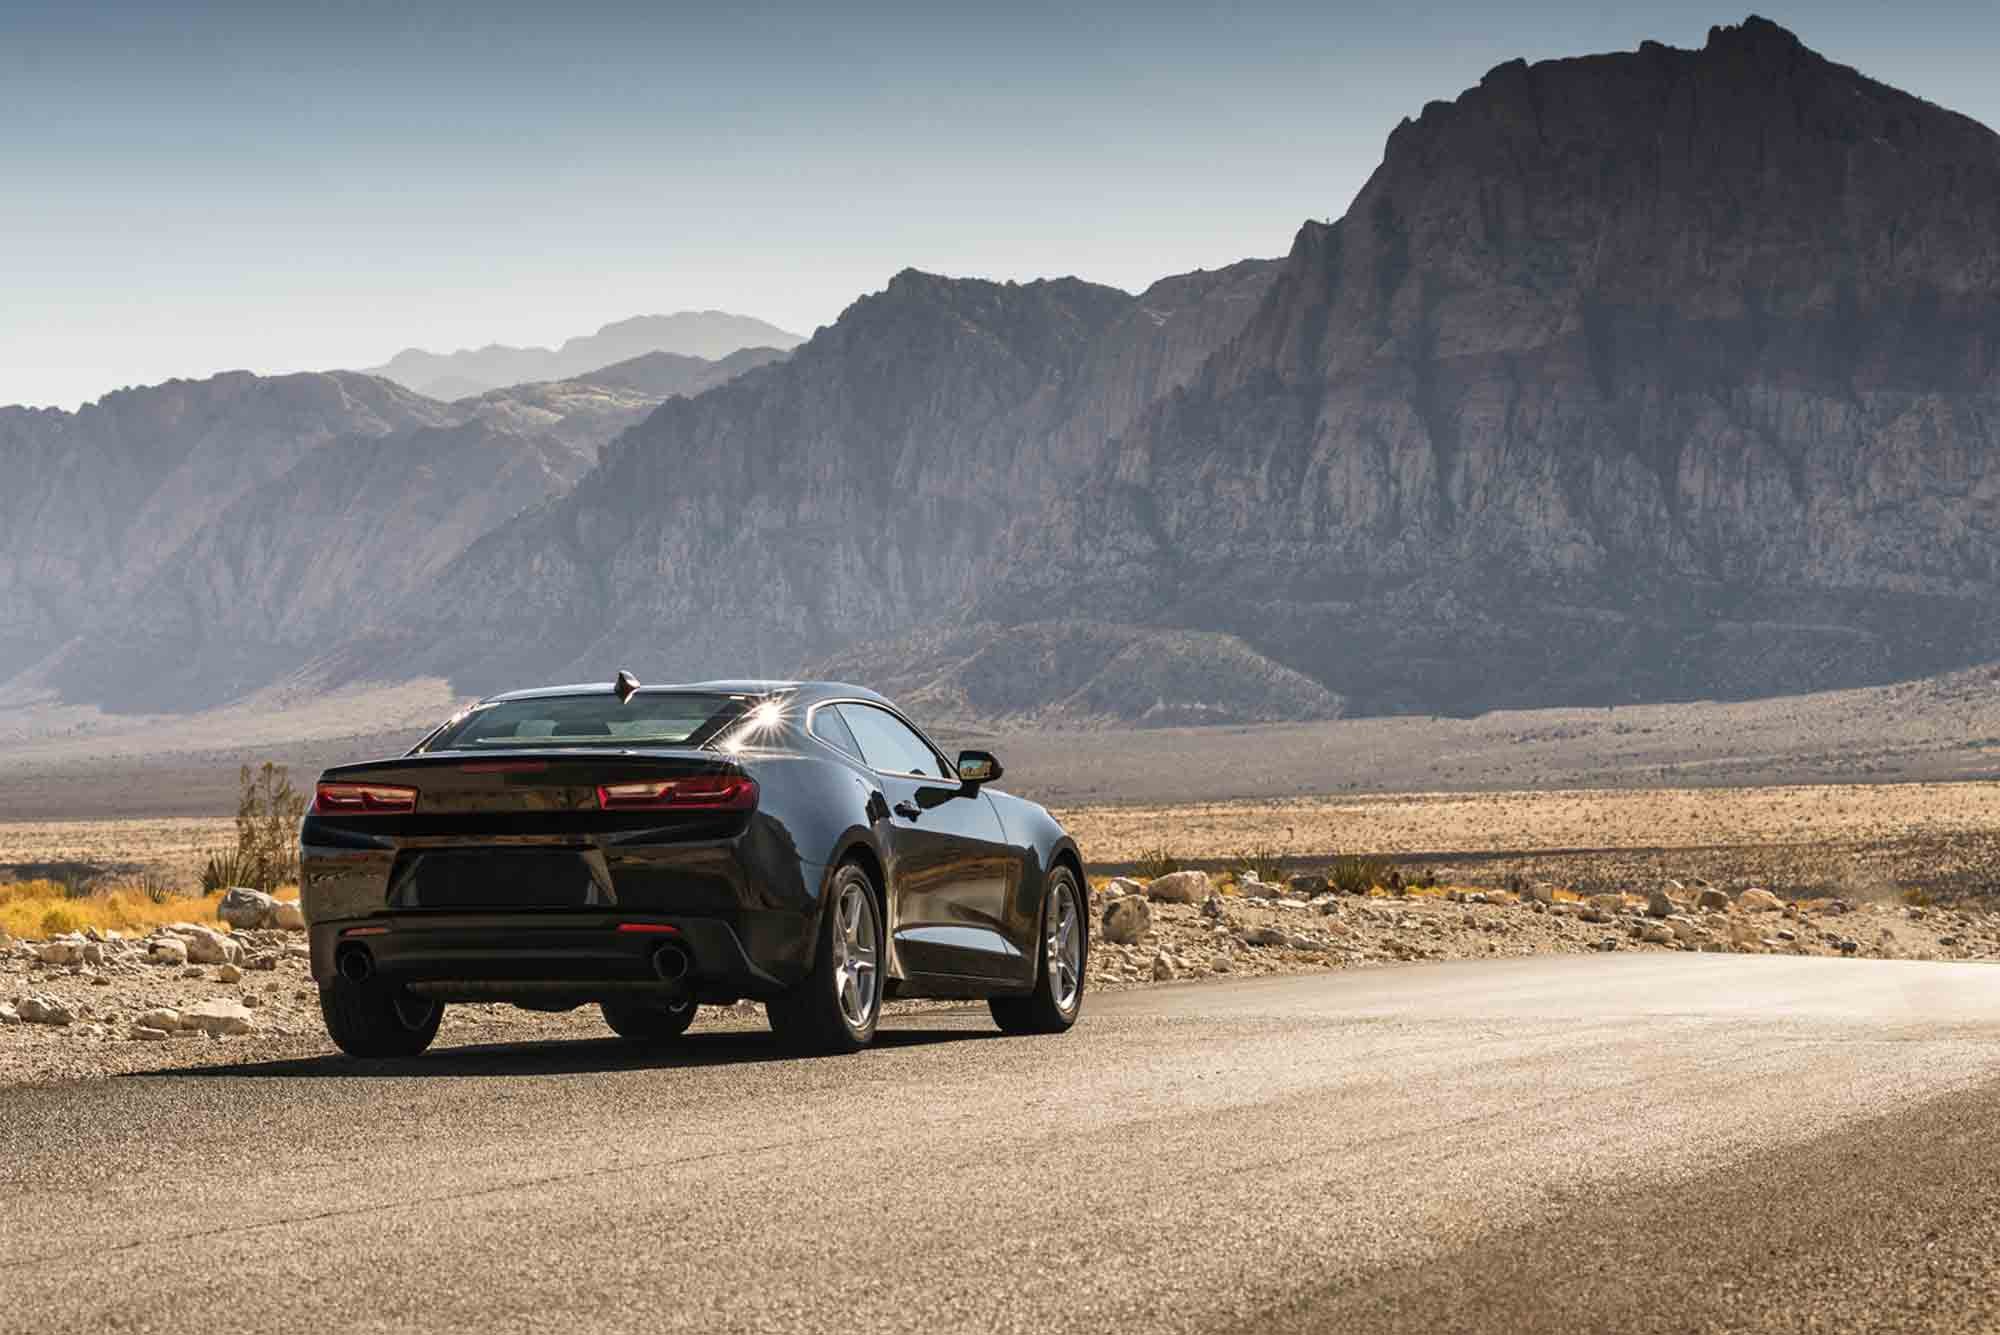 Camaro bought with new car loan driving in Utah desert